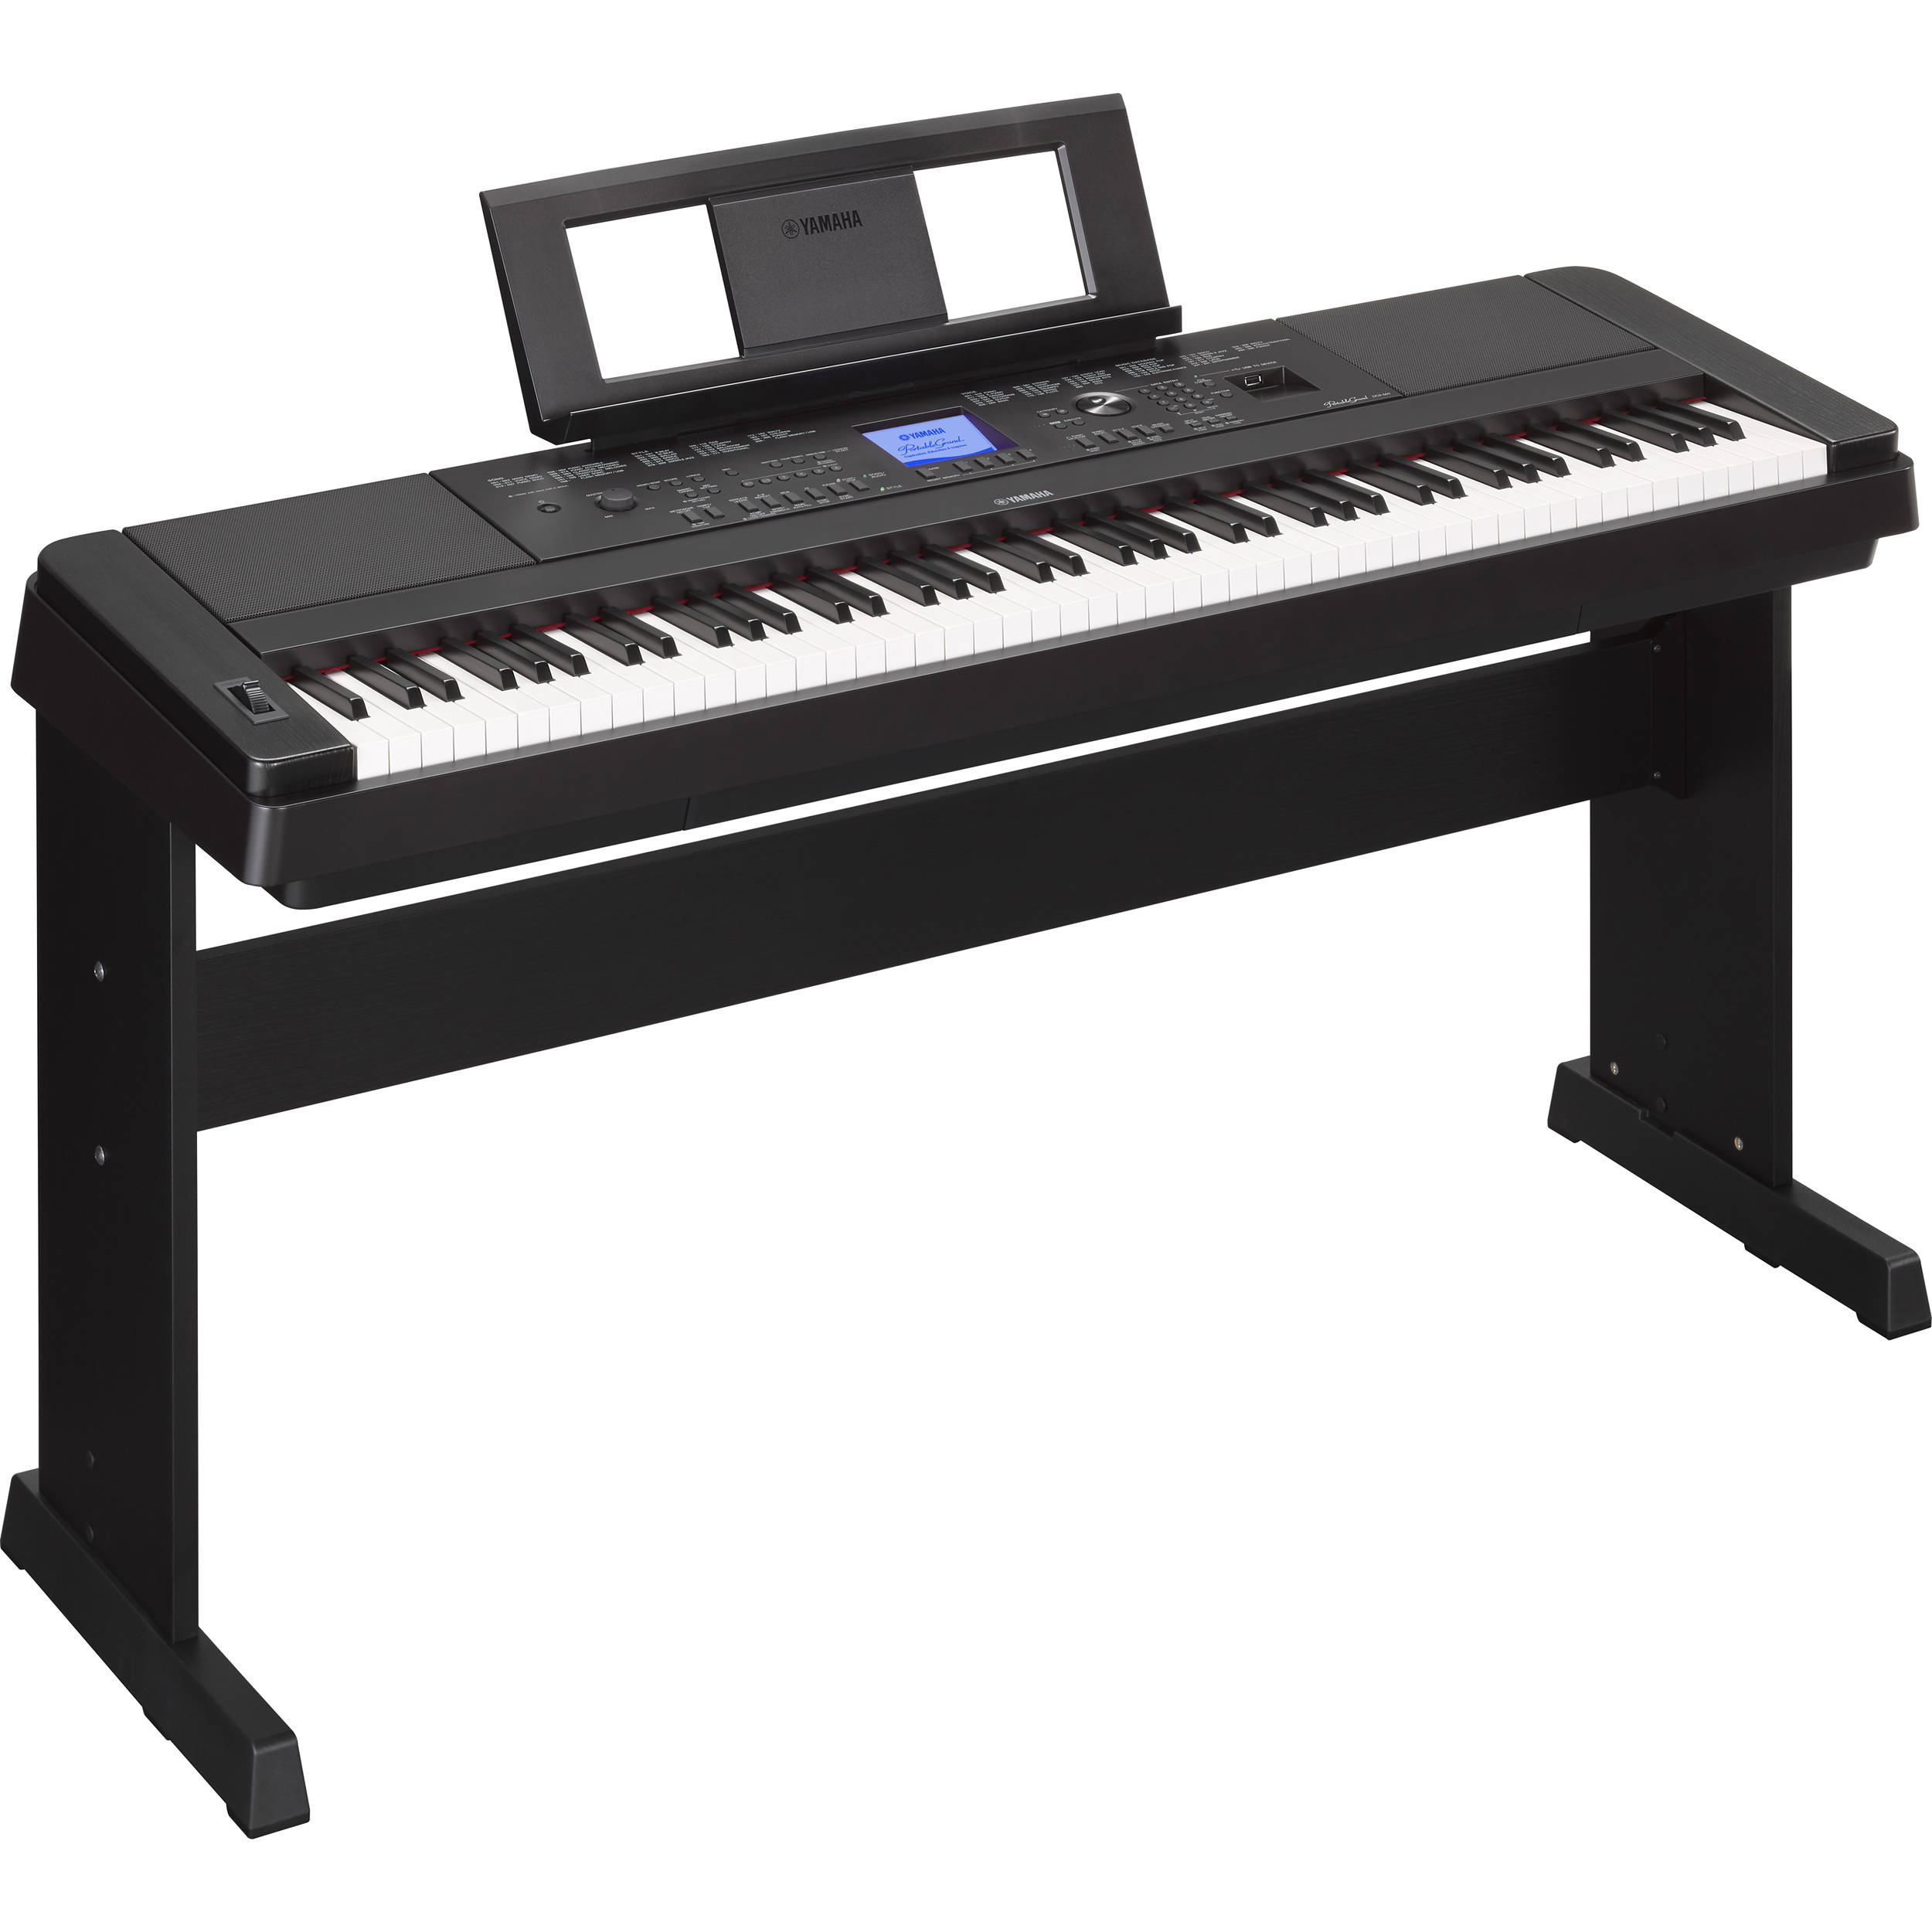 Yamaha DGX-660 - Portable Grand Digital Piano (Black) DGX660B